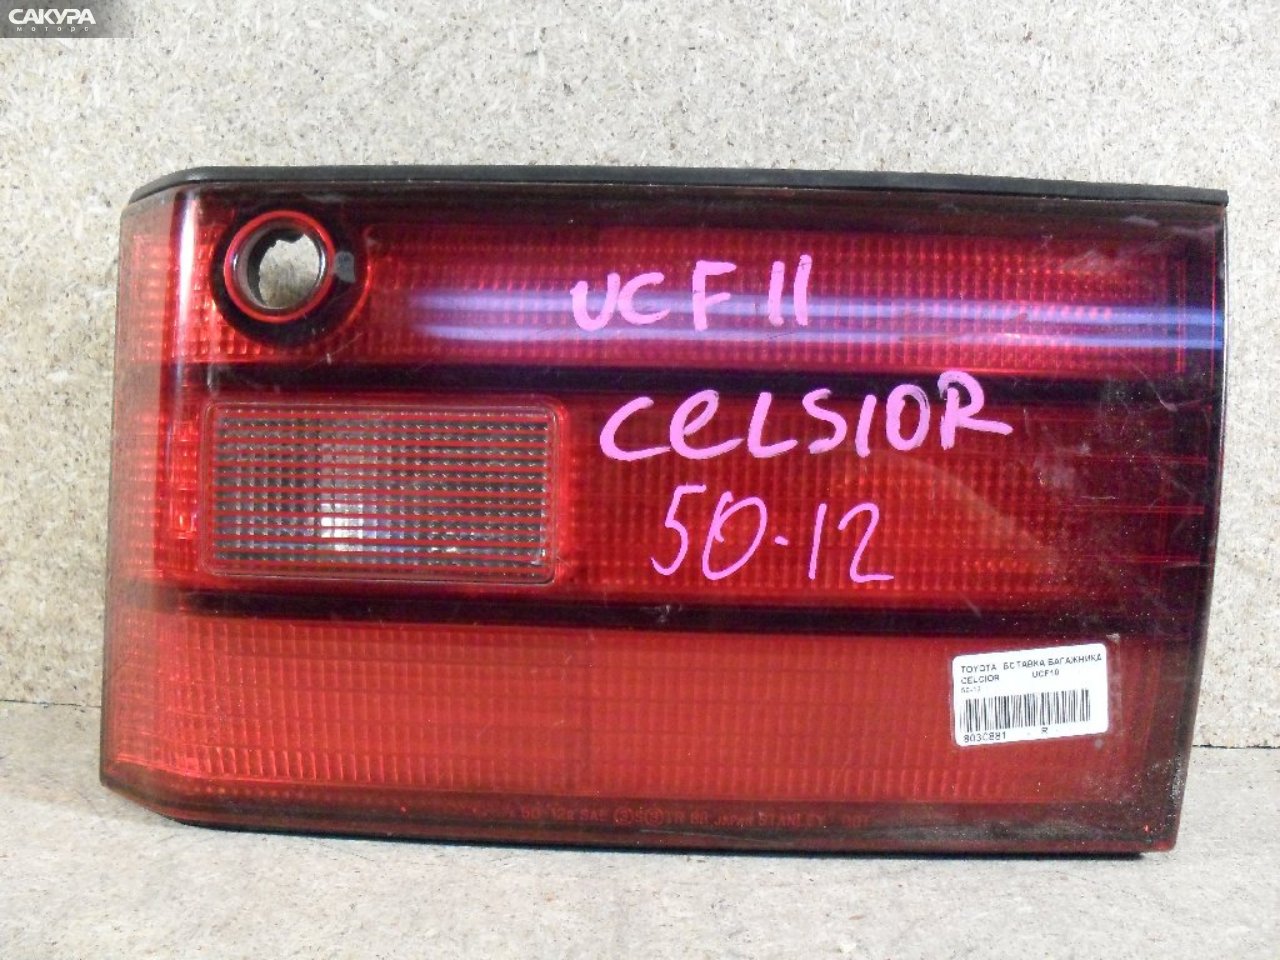 Фонарь вставка багажника правый Toyota Celsior UCF10 50-12: купить в Сакура Абакан.